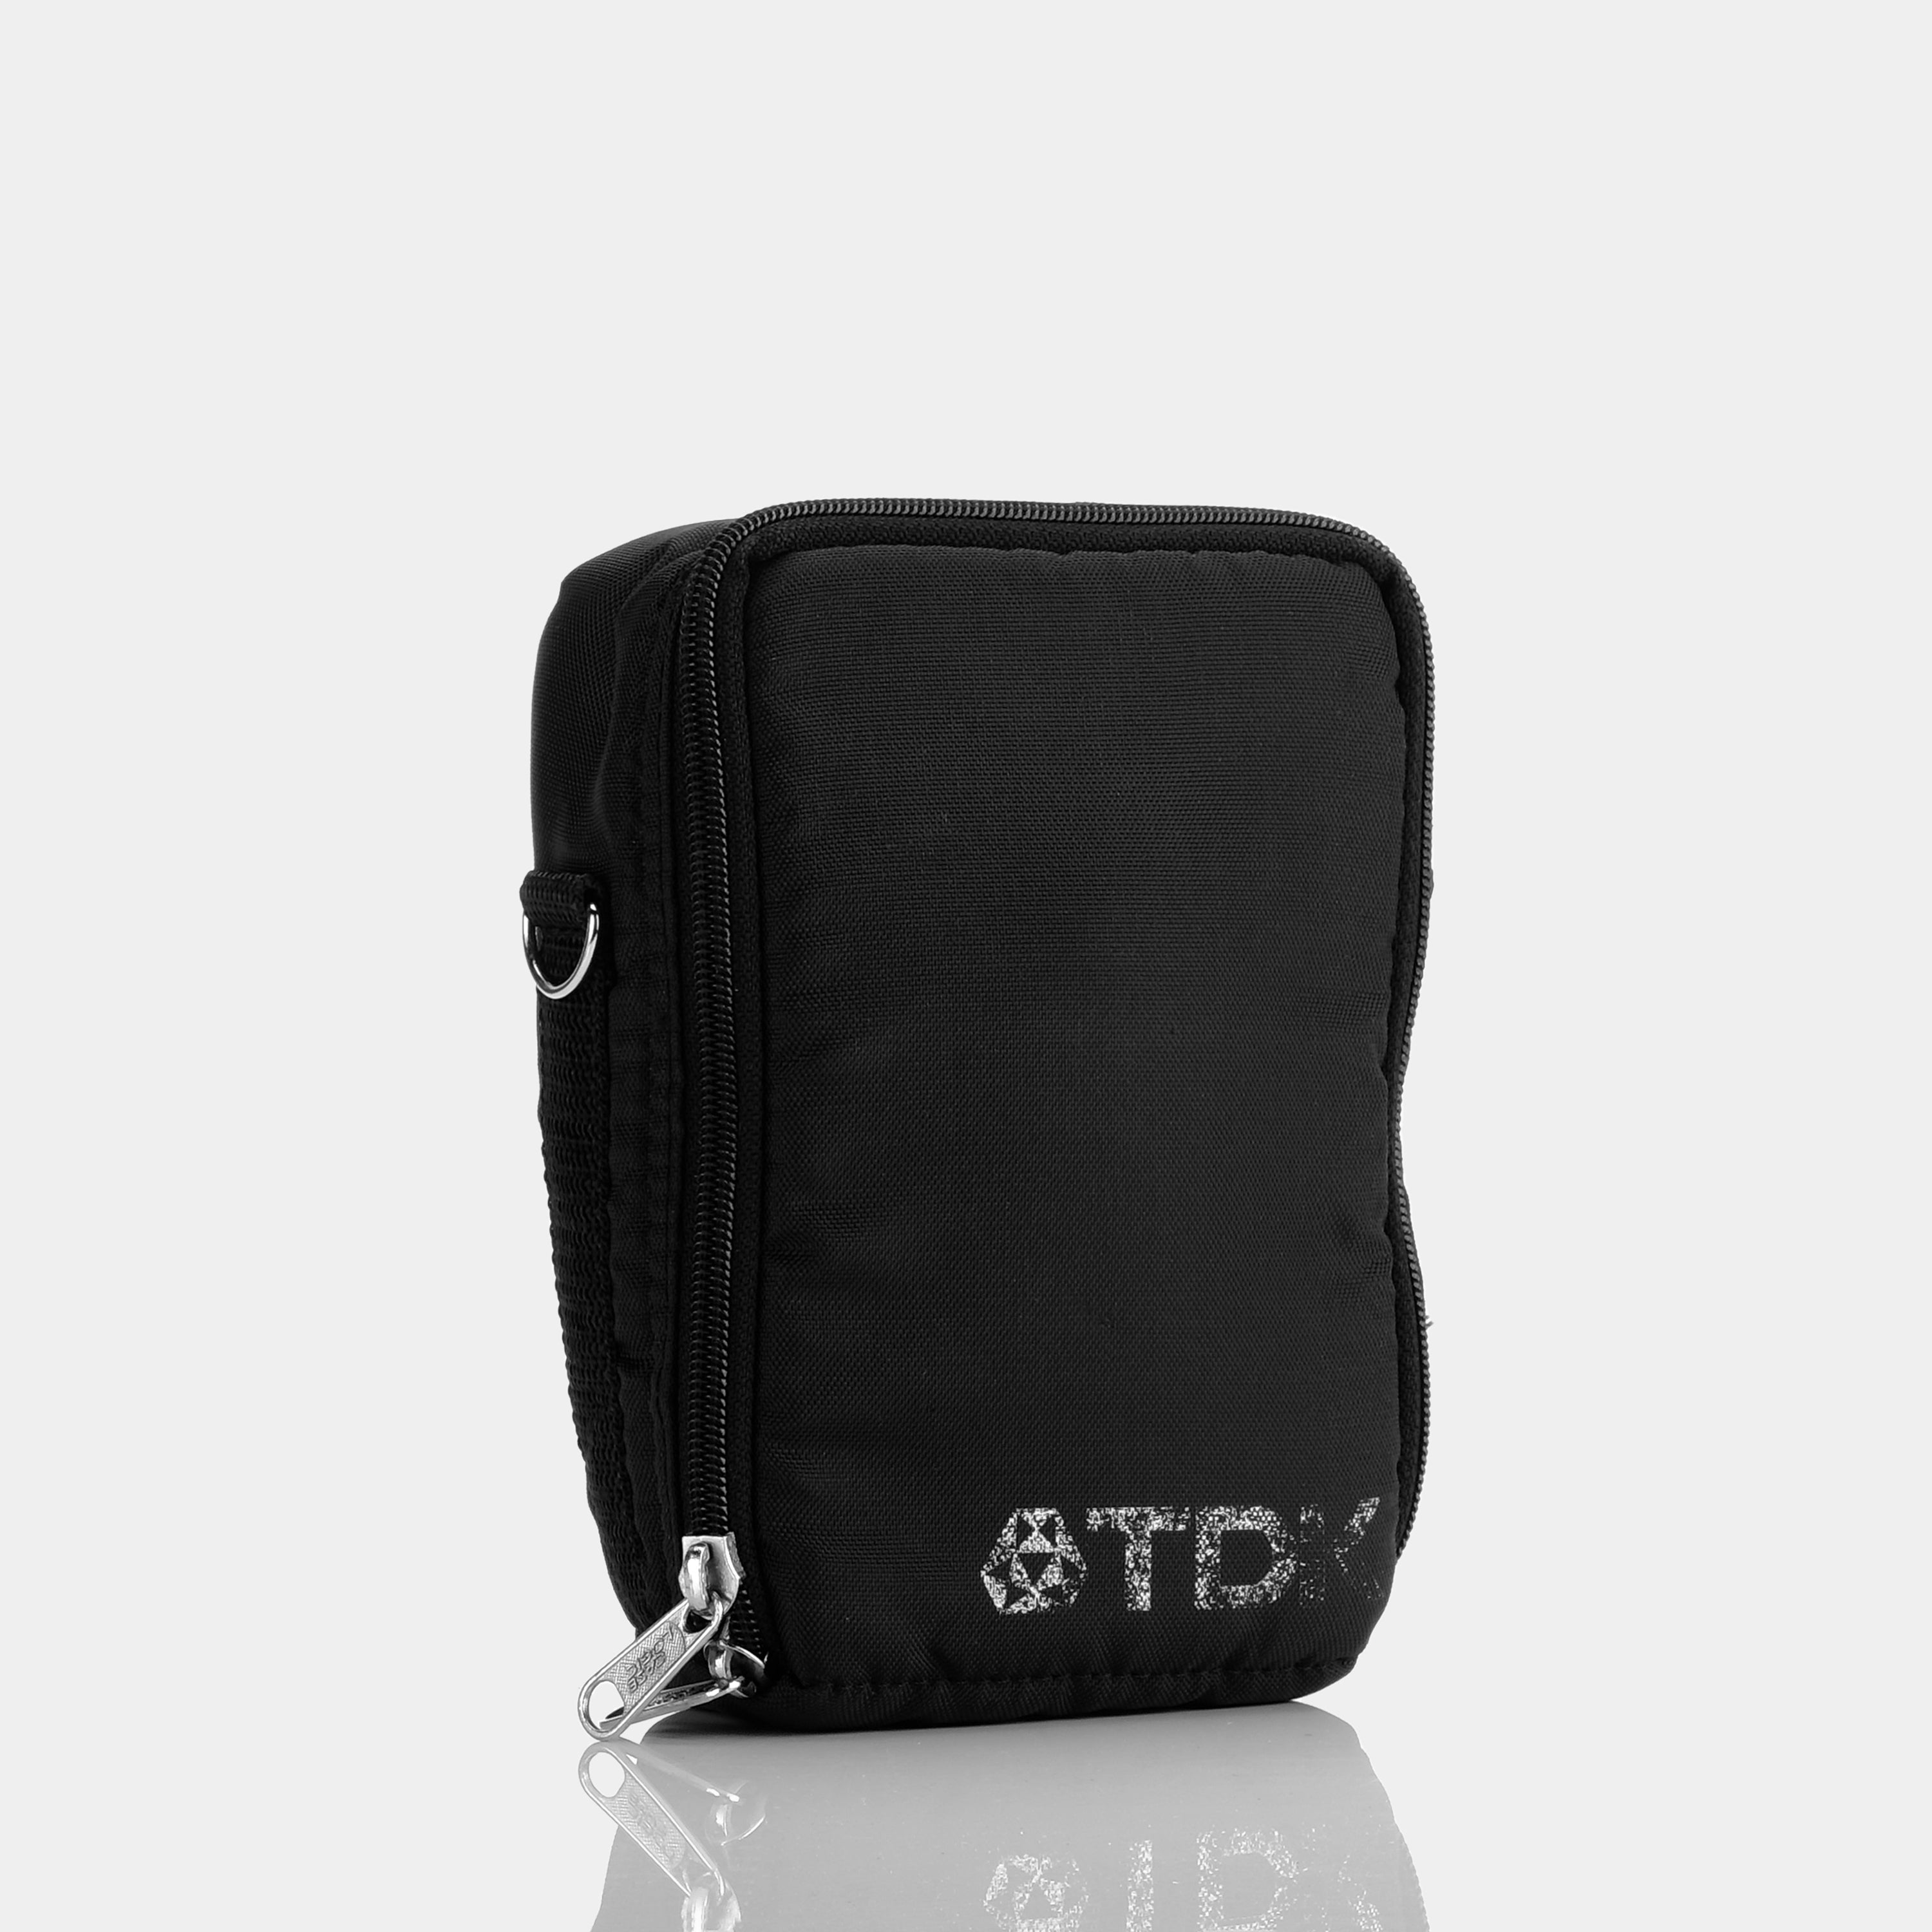 TDK Black Canvas Handheld Cassette Player Bag